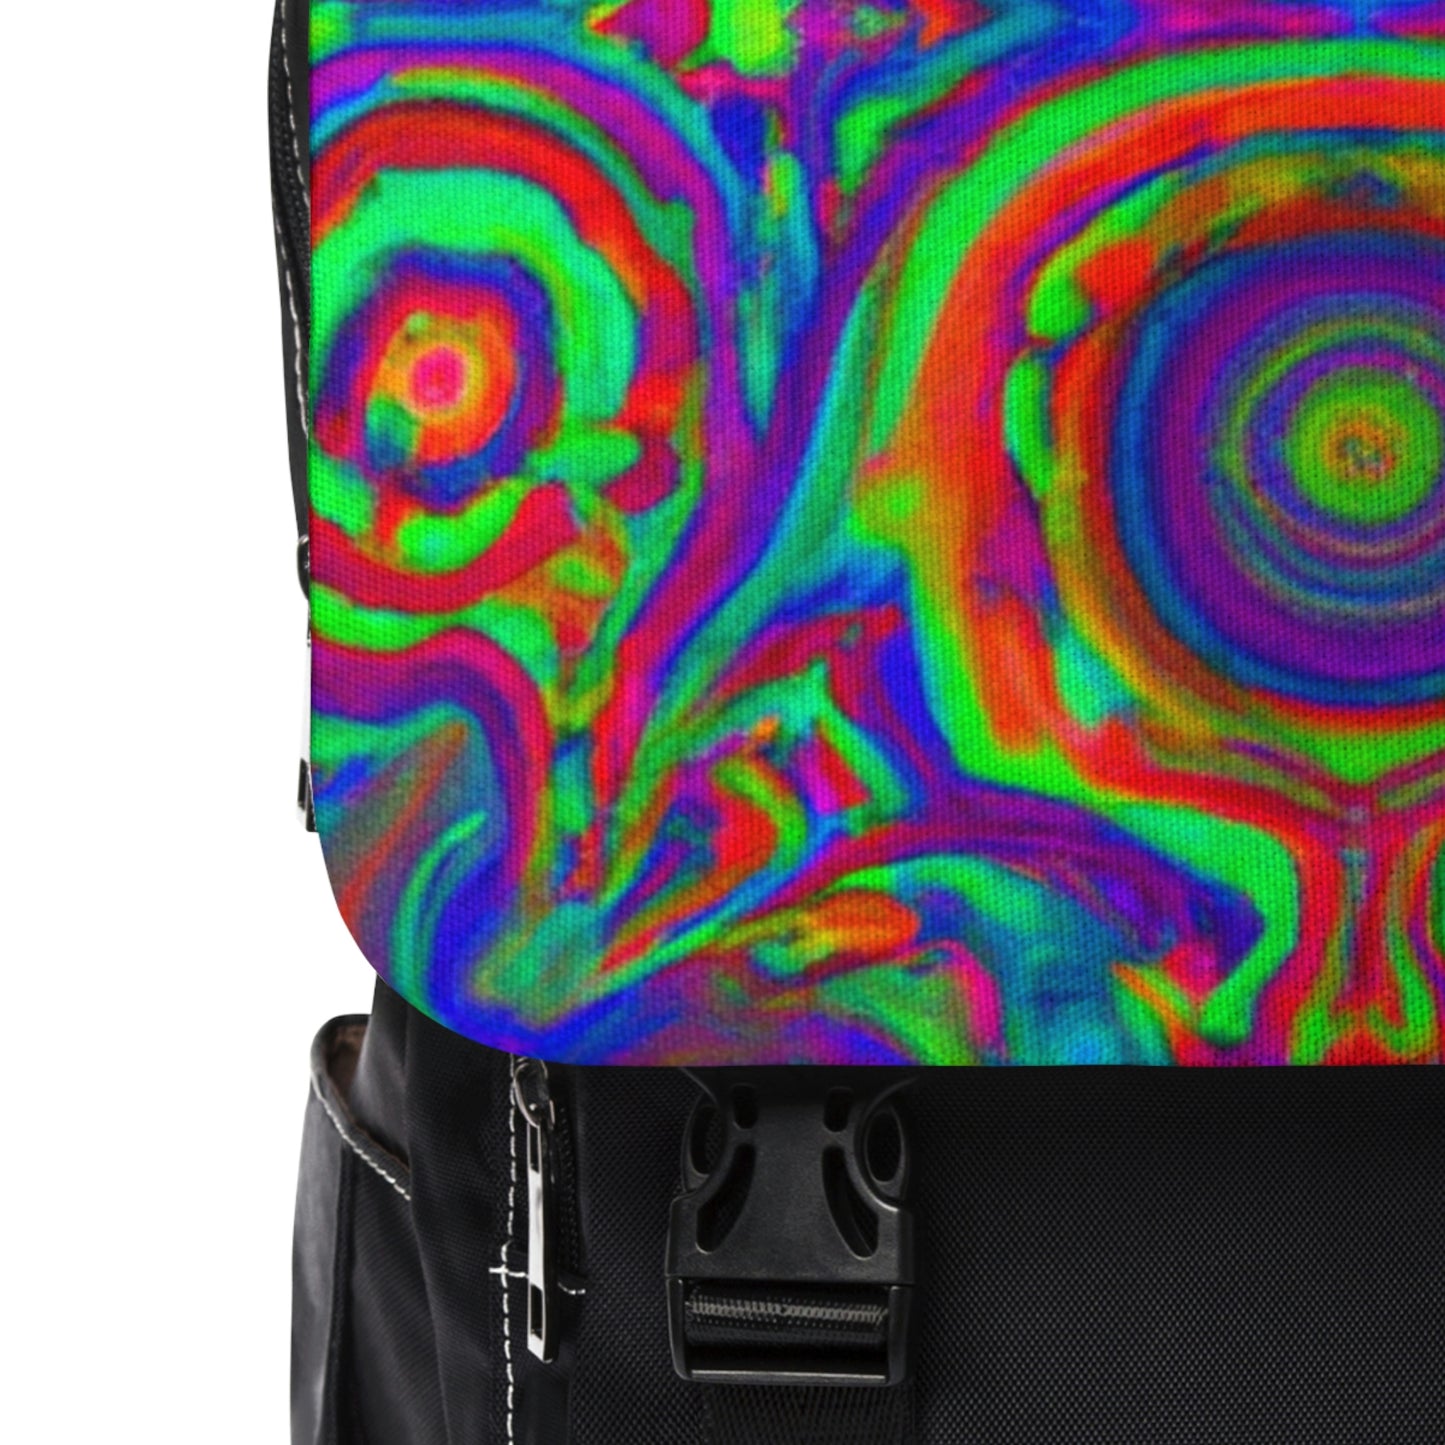 Diora - Psychedelic Shoulder Travel Backpack Bag